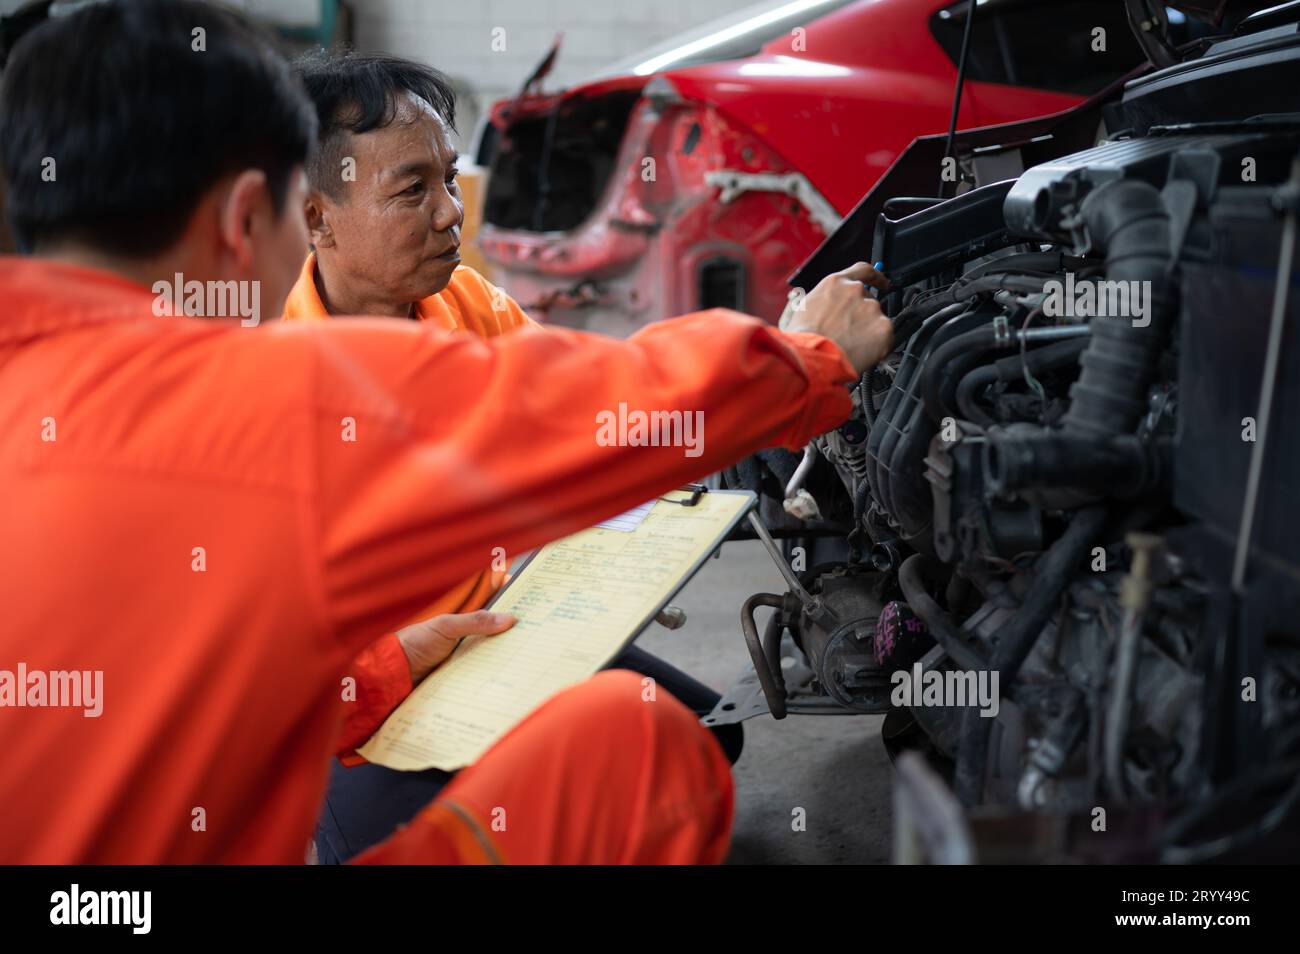 Les deux mécaniciens inspectent le moteur de la voiture d'un client qui est amené pour réparation dans un garage. Banque D'Images